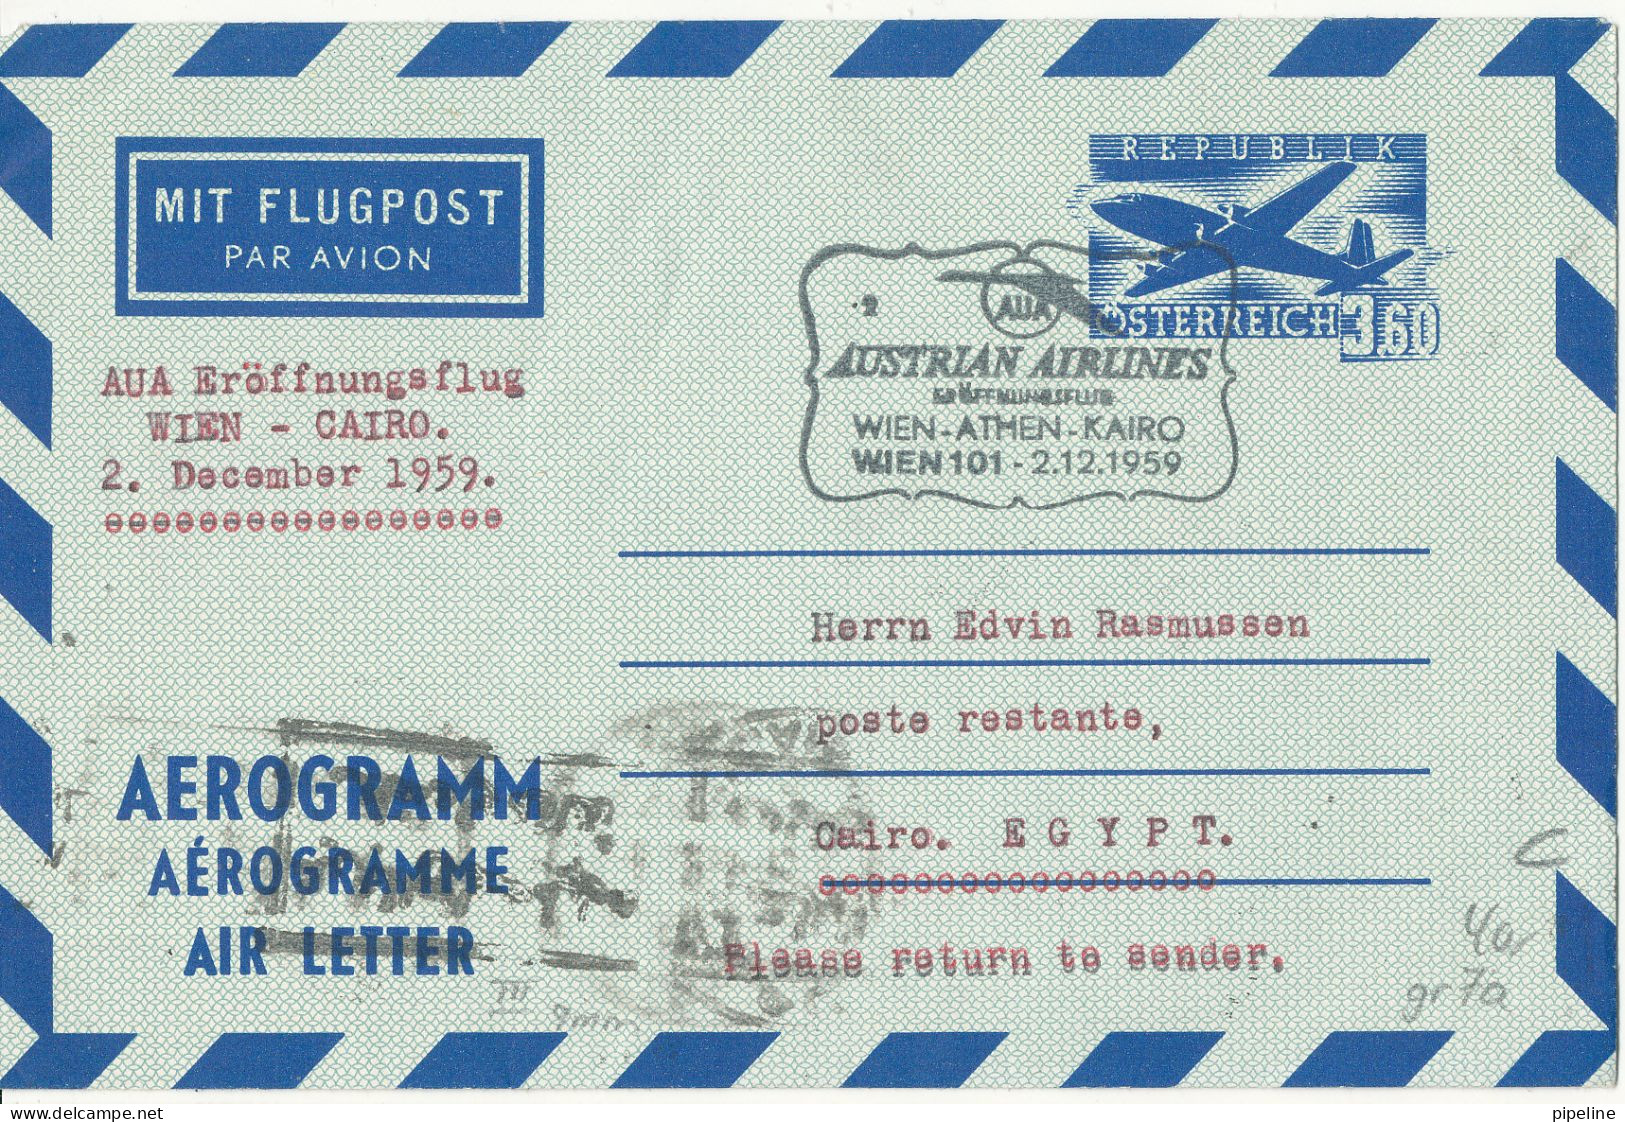 Austria Aerogramme First Flight Austrian Airlines Wien - Athen - Cairo -Wien 2-12-1959 - Primi Voli